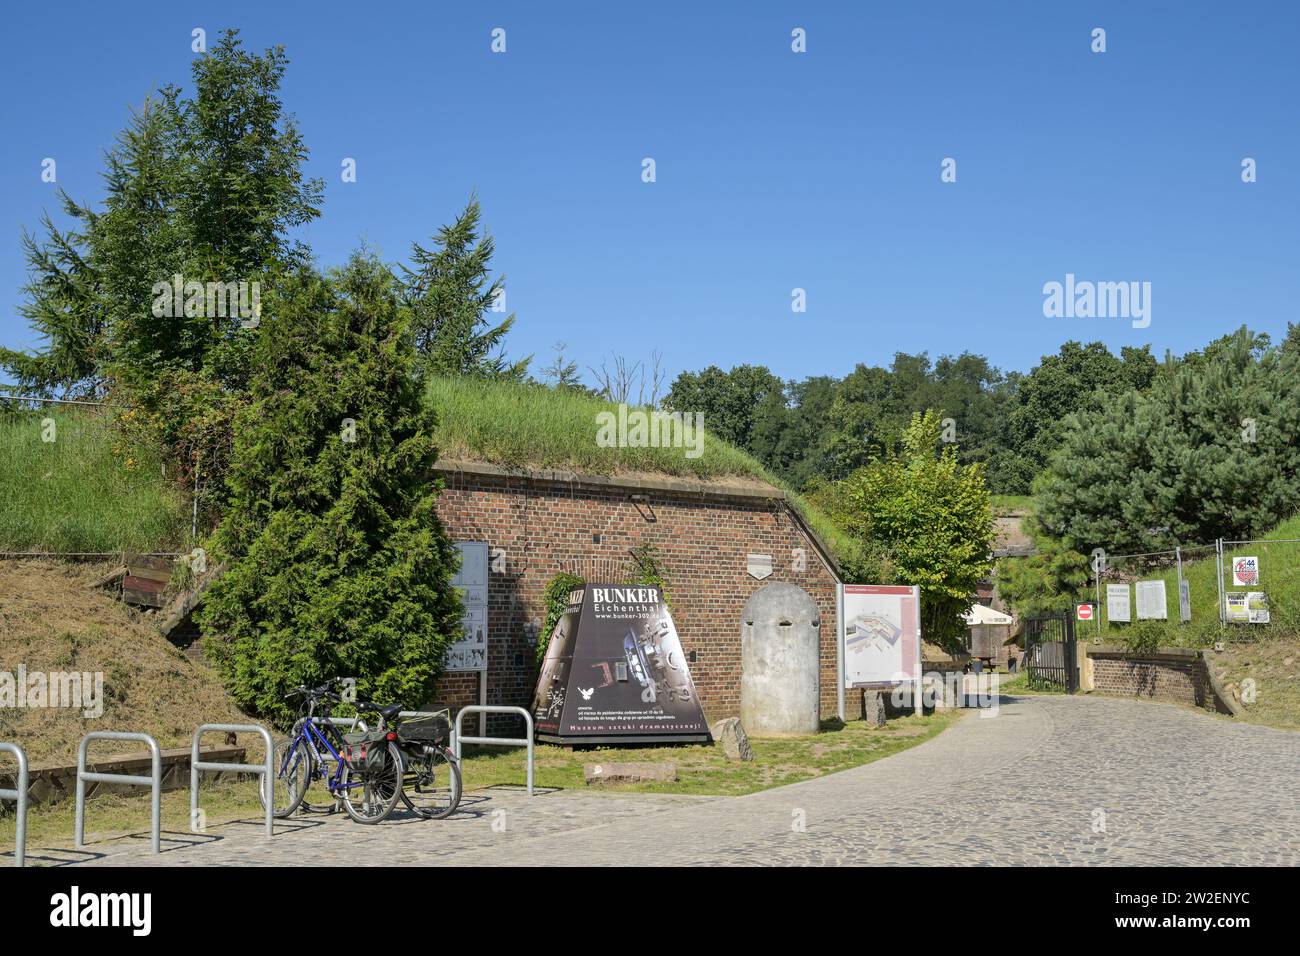 Ausstellung, Festung Westbatterie - Fort Zachodni, Swinemünde, Woiwodschaft Westpommern, Polen Stockfoto